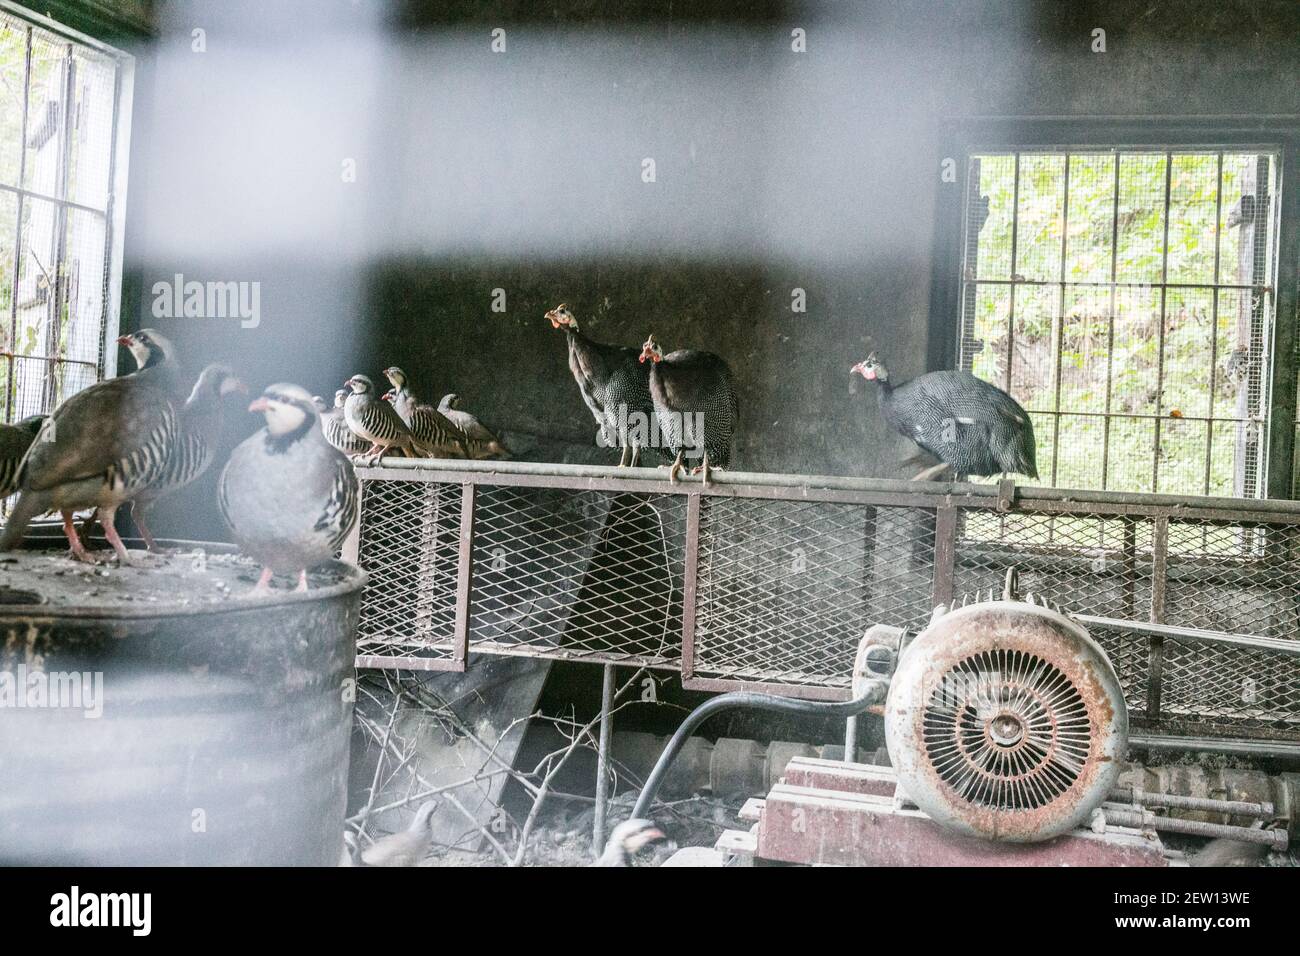 Eine Auswahl von Wildvögeln in einem alten stillgelegten Schuppen eingeschlossen. Rebhühner und Guineavögel sind zu sehen. Stockfoto